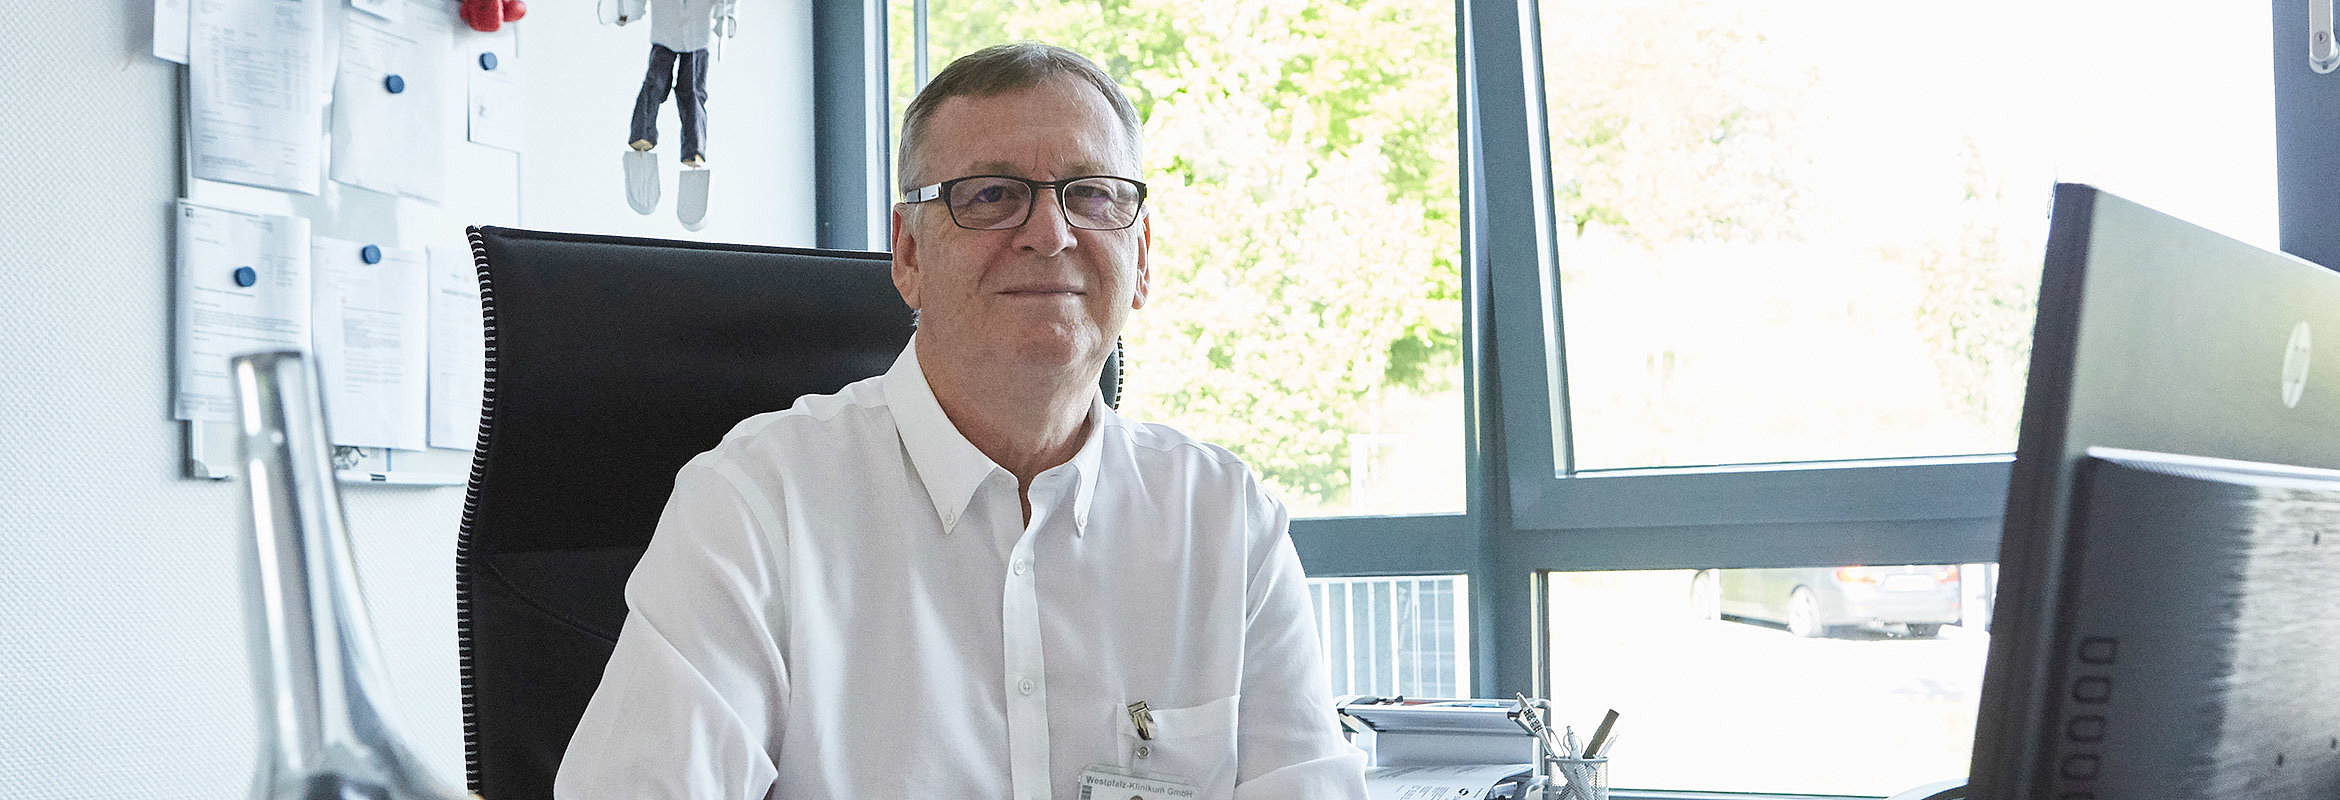 Dr. med. Harald Dinges, Chefarzt der Klinik für Orthopädie in Kusel, an seinem Schreibtisch